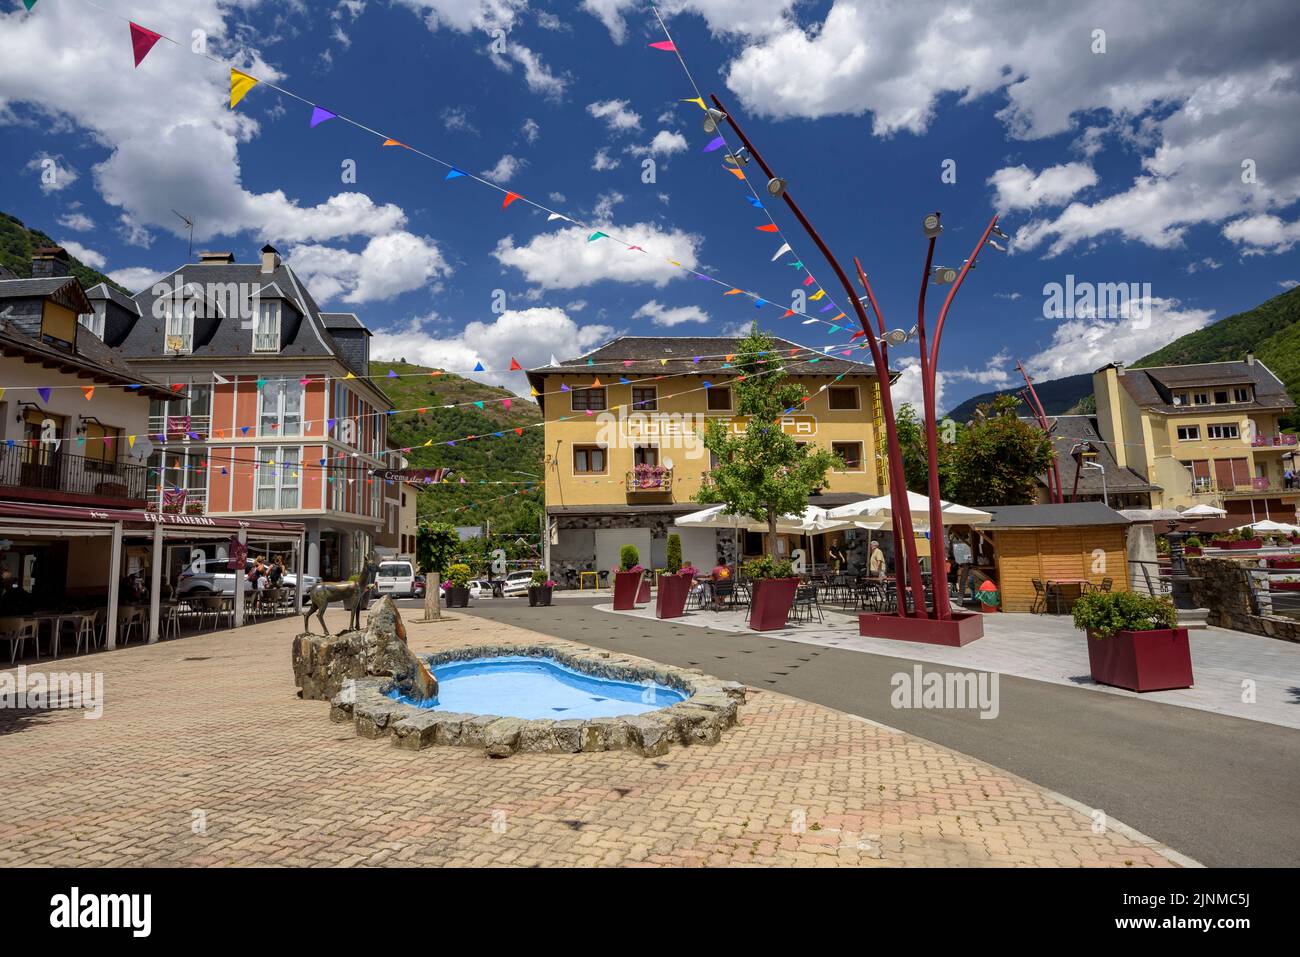 Place de l'hôtel de ville l'après-midi d'été, dans la vallée de l'Aran (Lleida, Catalogne, Espagne, Pyrénées) ESP: Plaza del Ayuntamiento des en verano Banque D'Images